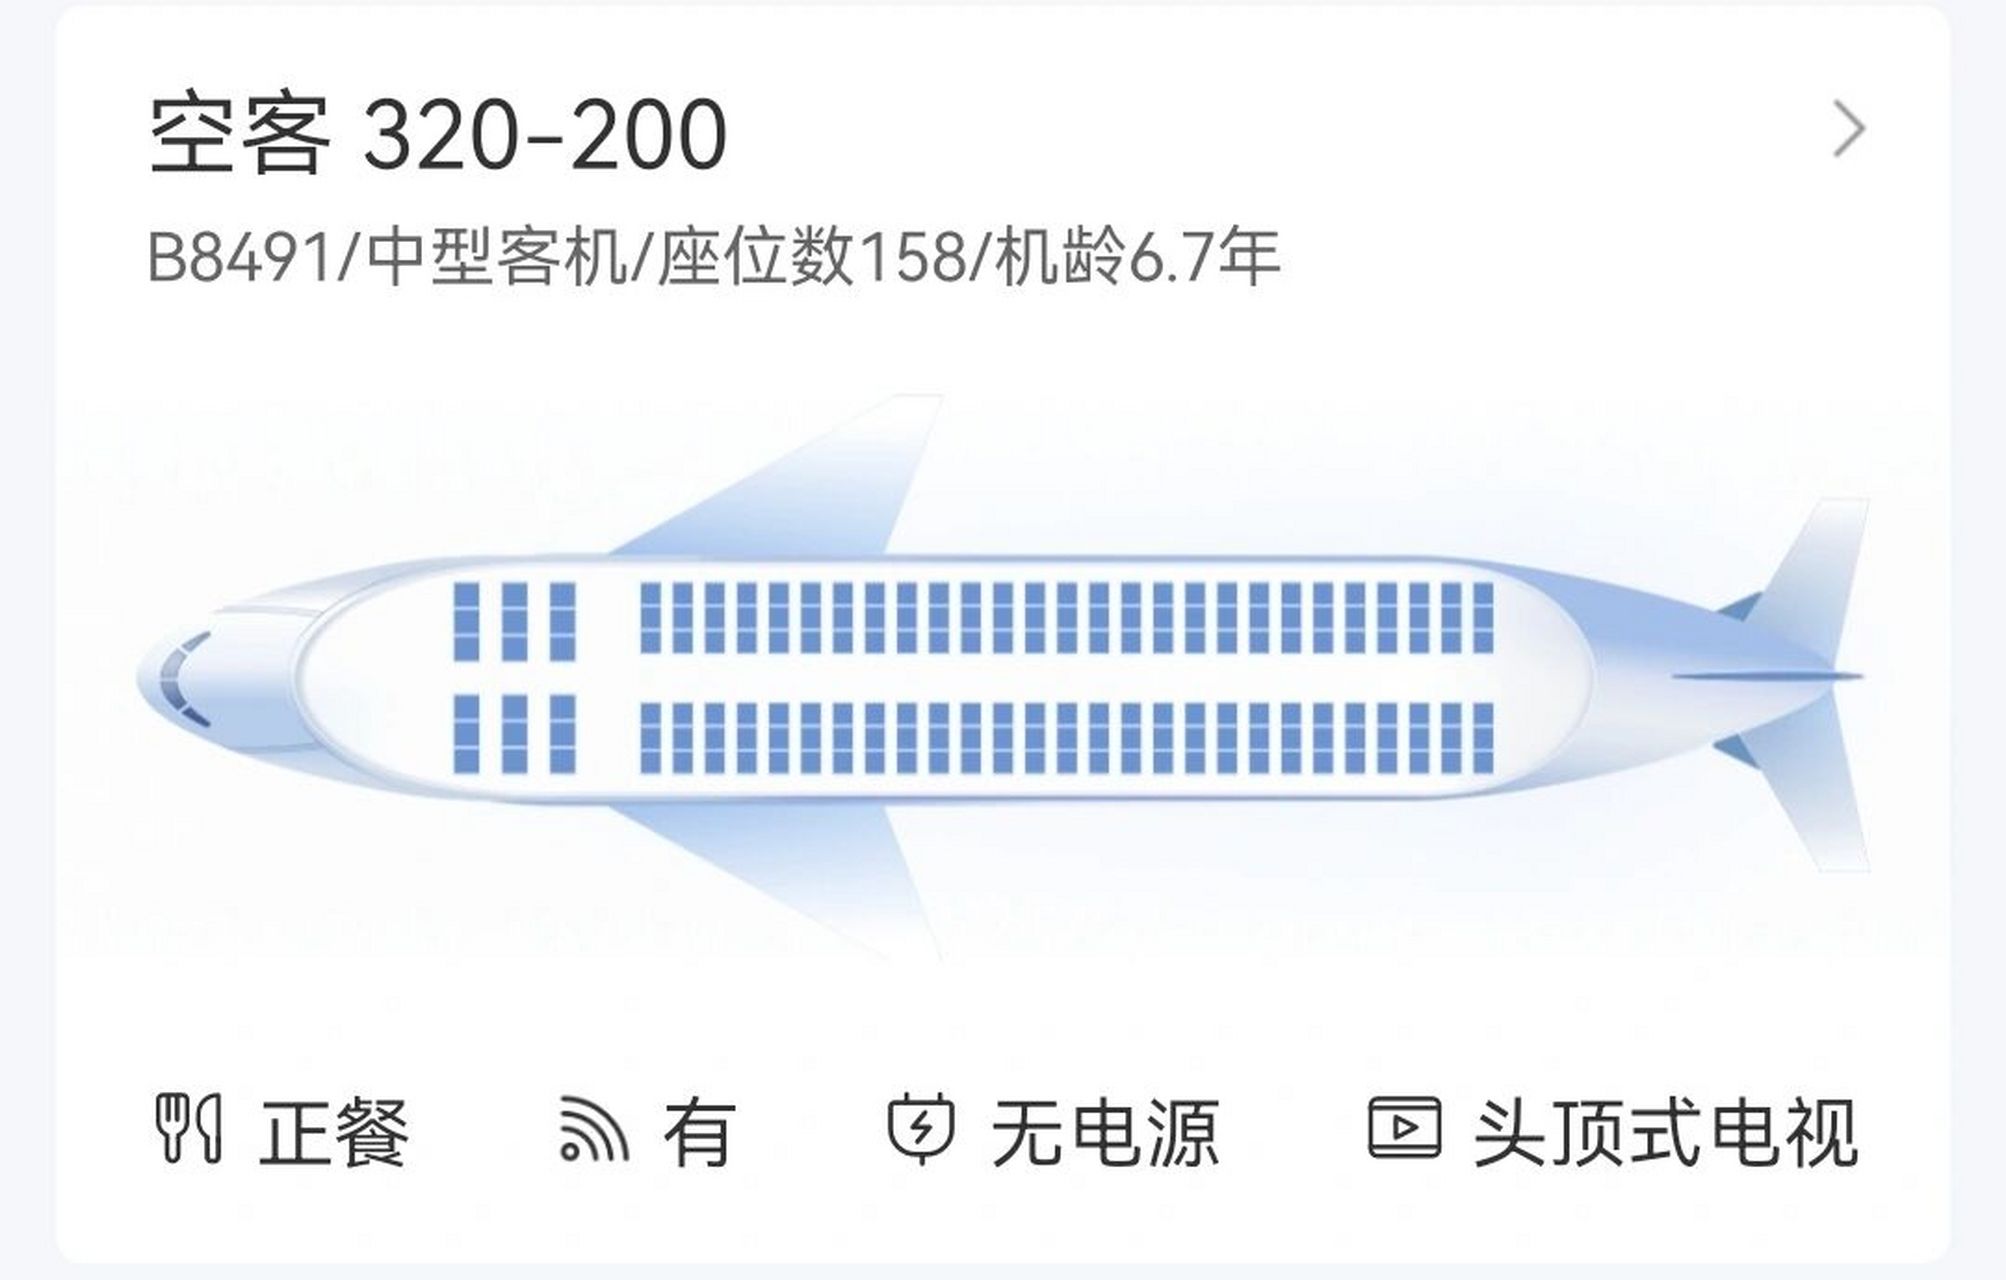 国航空客320选座攻略 请问下,国航30a有没有窗户,来自经济舱的疑问?